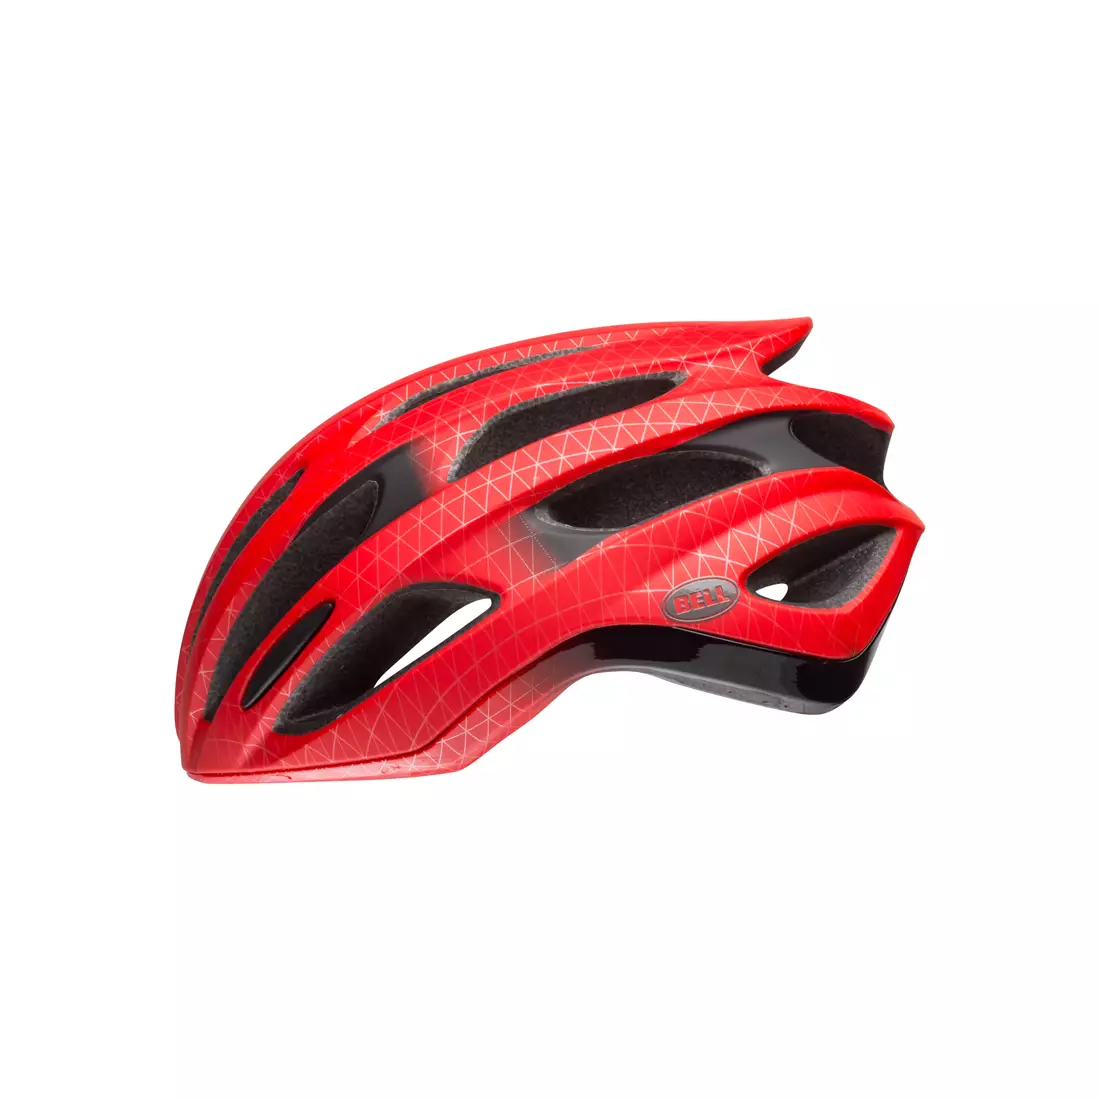 BELL FORMULA BEL-7088571 bicycle helmet matte red black